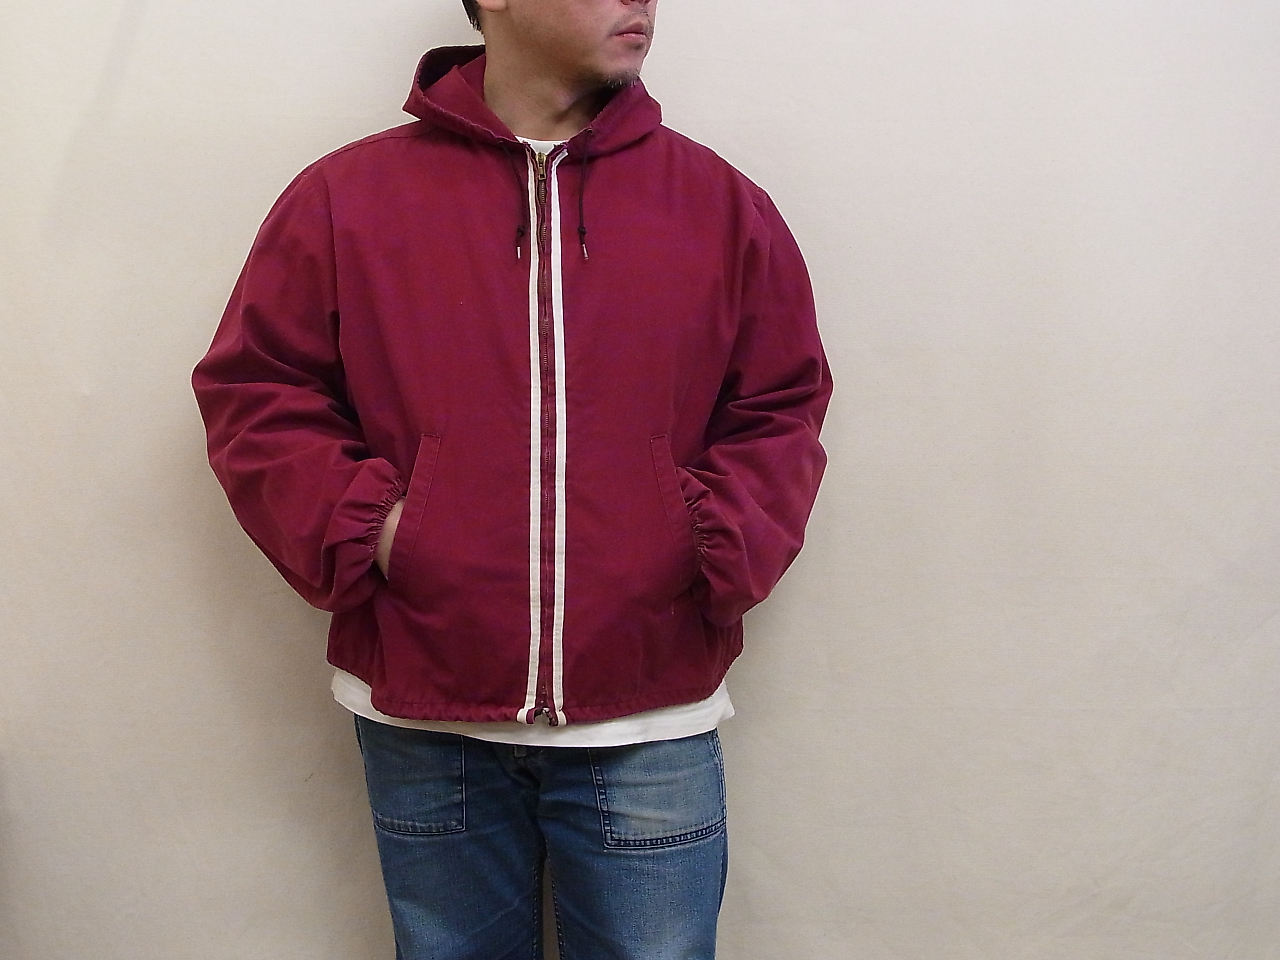 vintage-sportswear-hooded-jacket-20190404-3